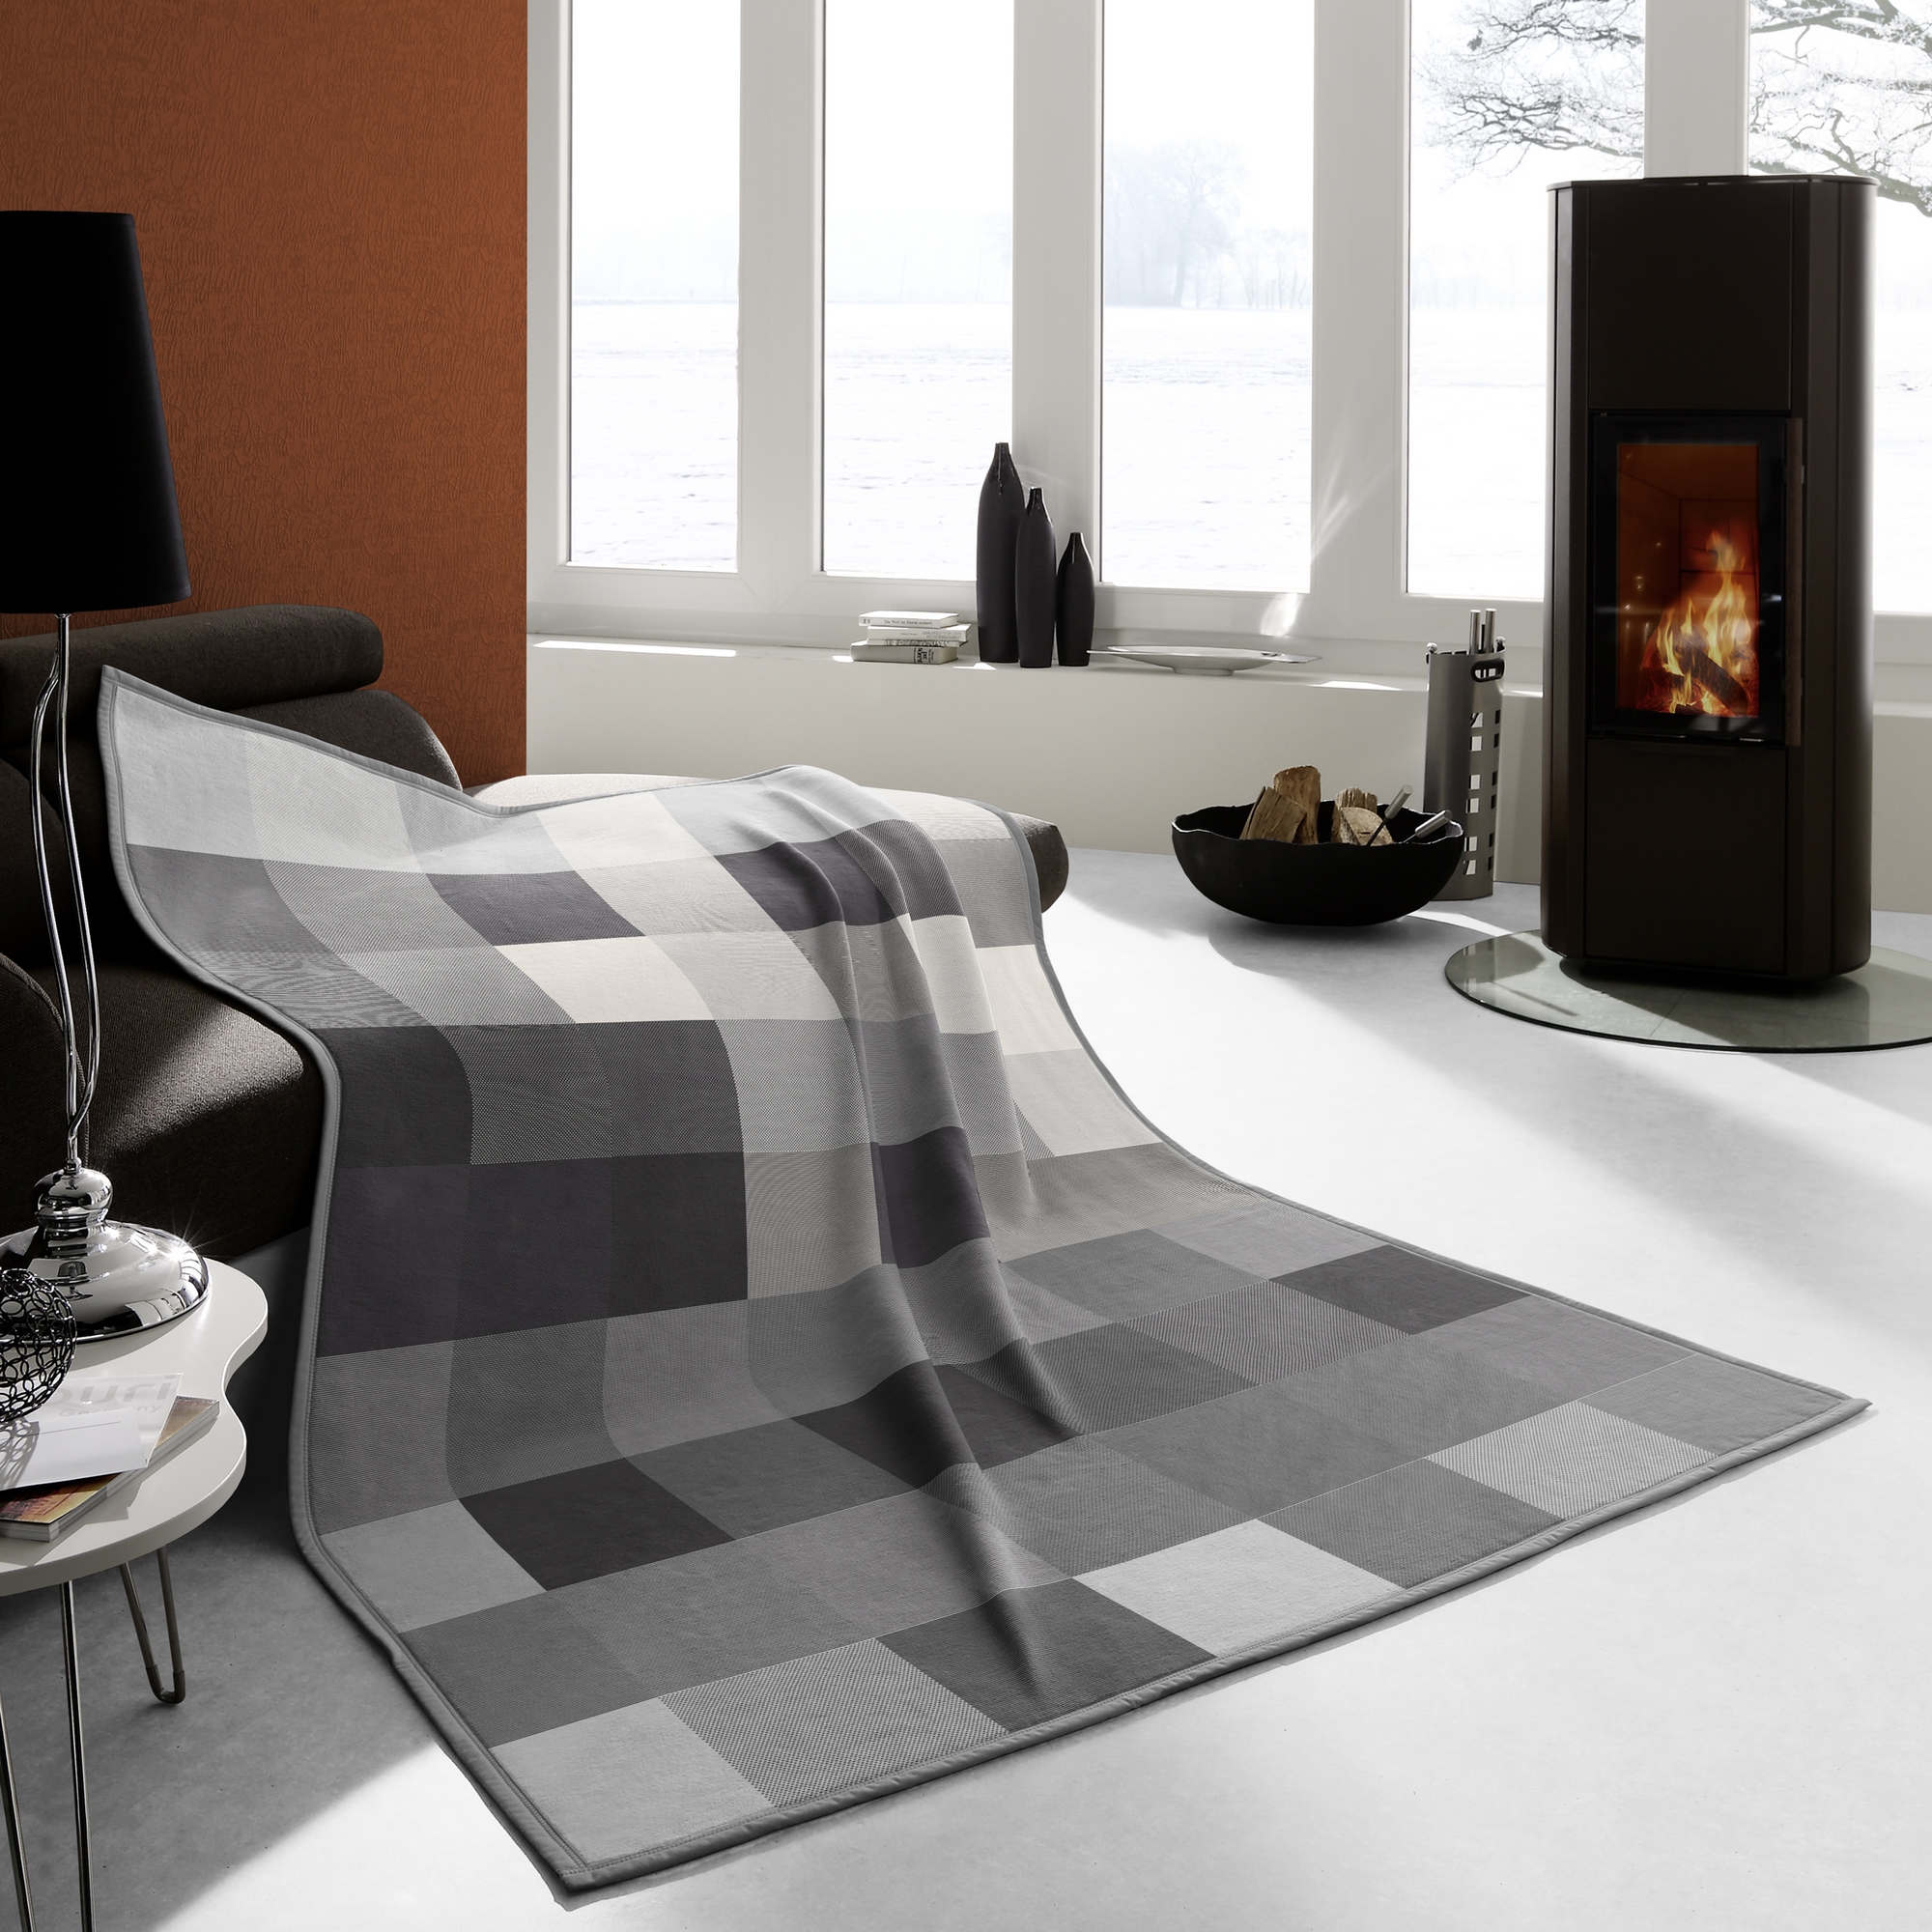 Biederlack blanket - Cotton Home Check coal gray | Couchdecken.de - The  Sofa Blanket Shop